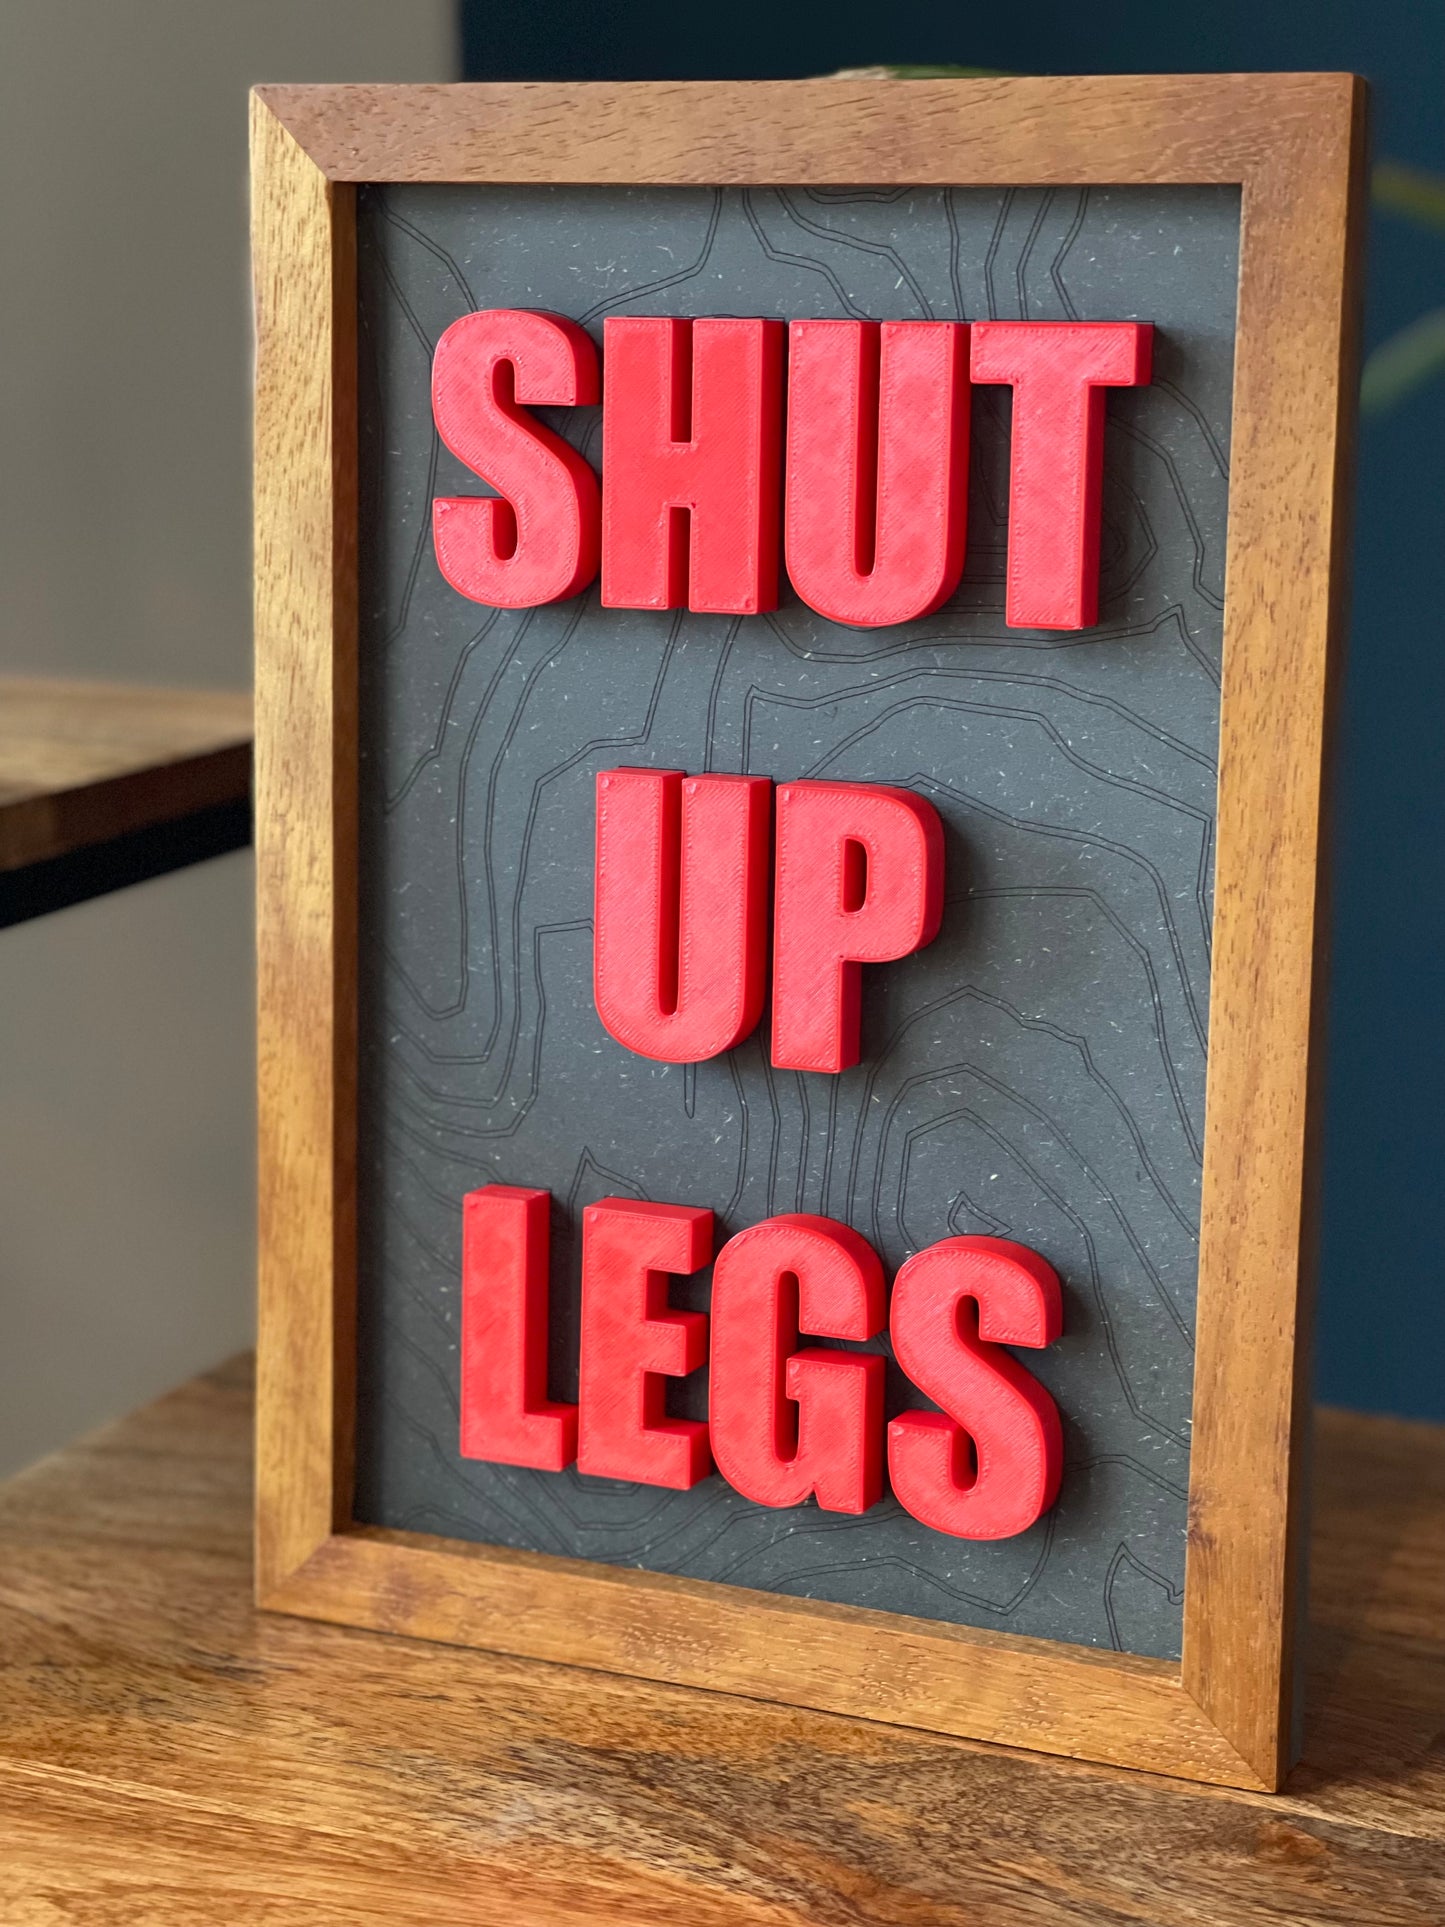 SHUT UP LEGS - 3D Signs